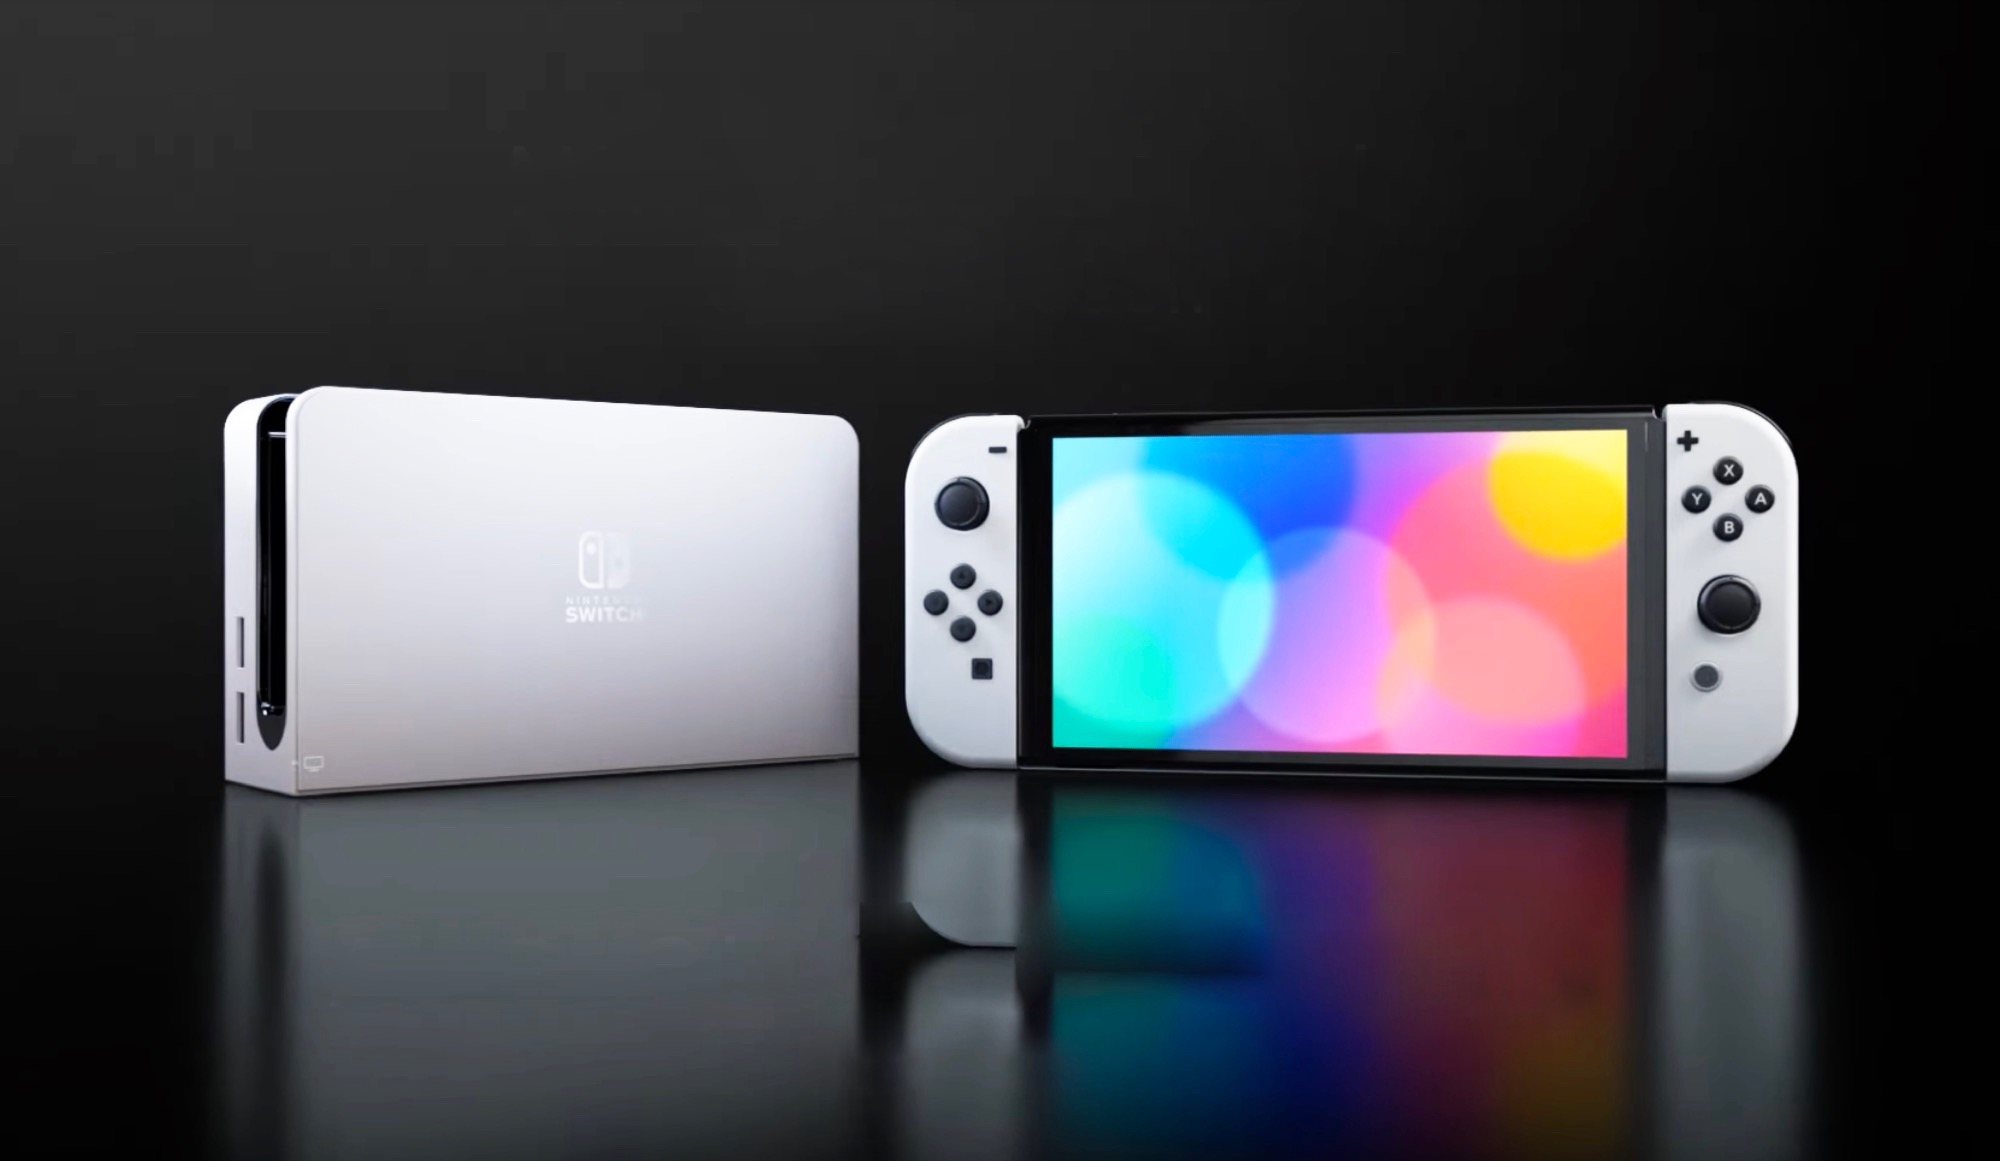 erhält - Upgrades Nintendo OLED-Display inklusive Switch Die Notebookcheck.com größeren einem spannende brandneue News